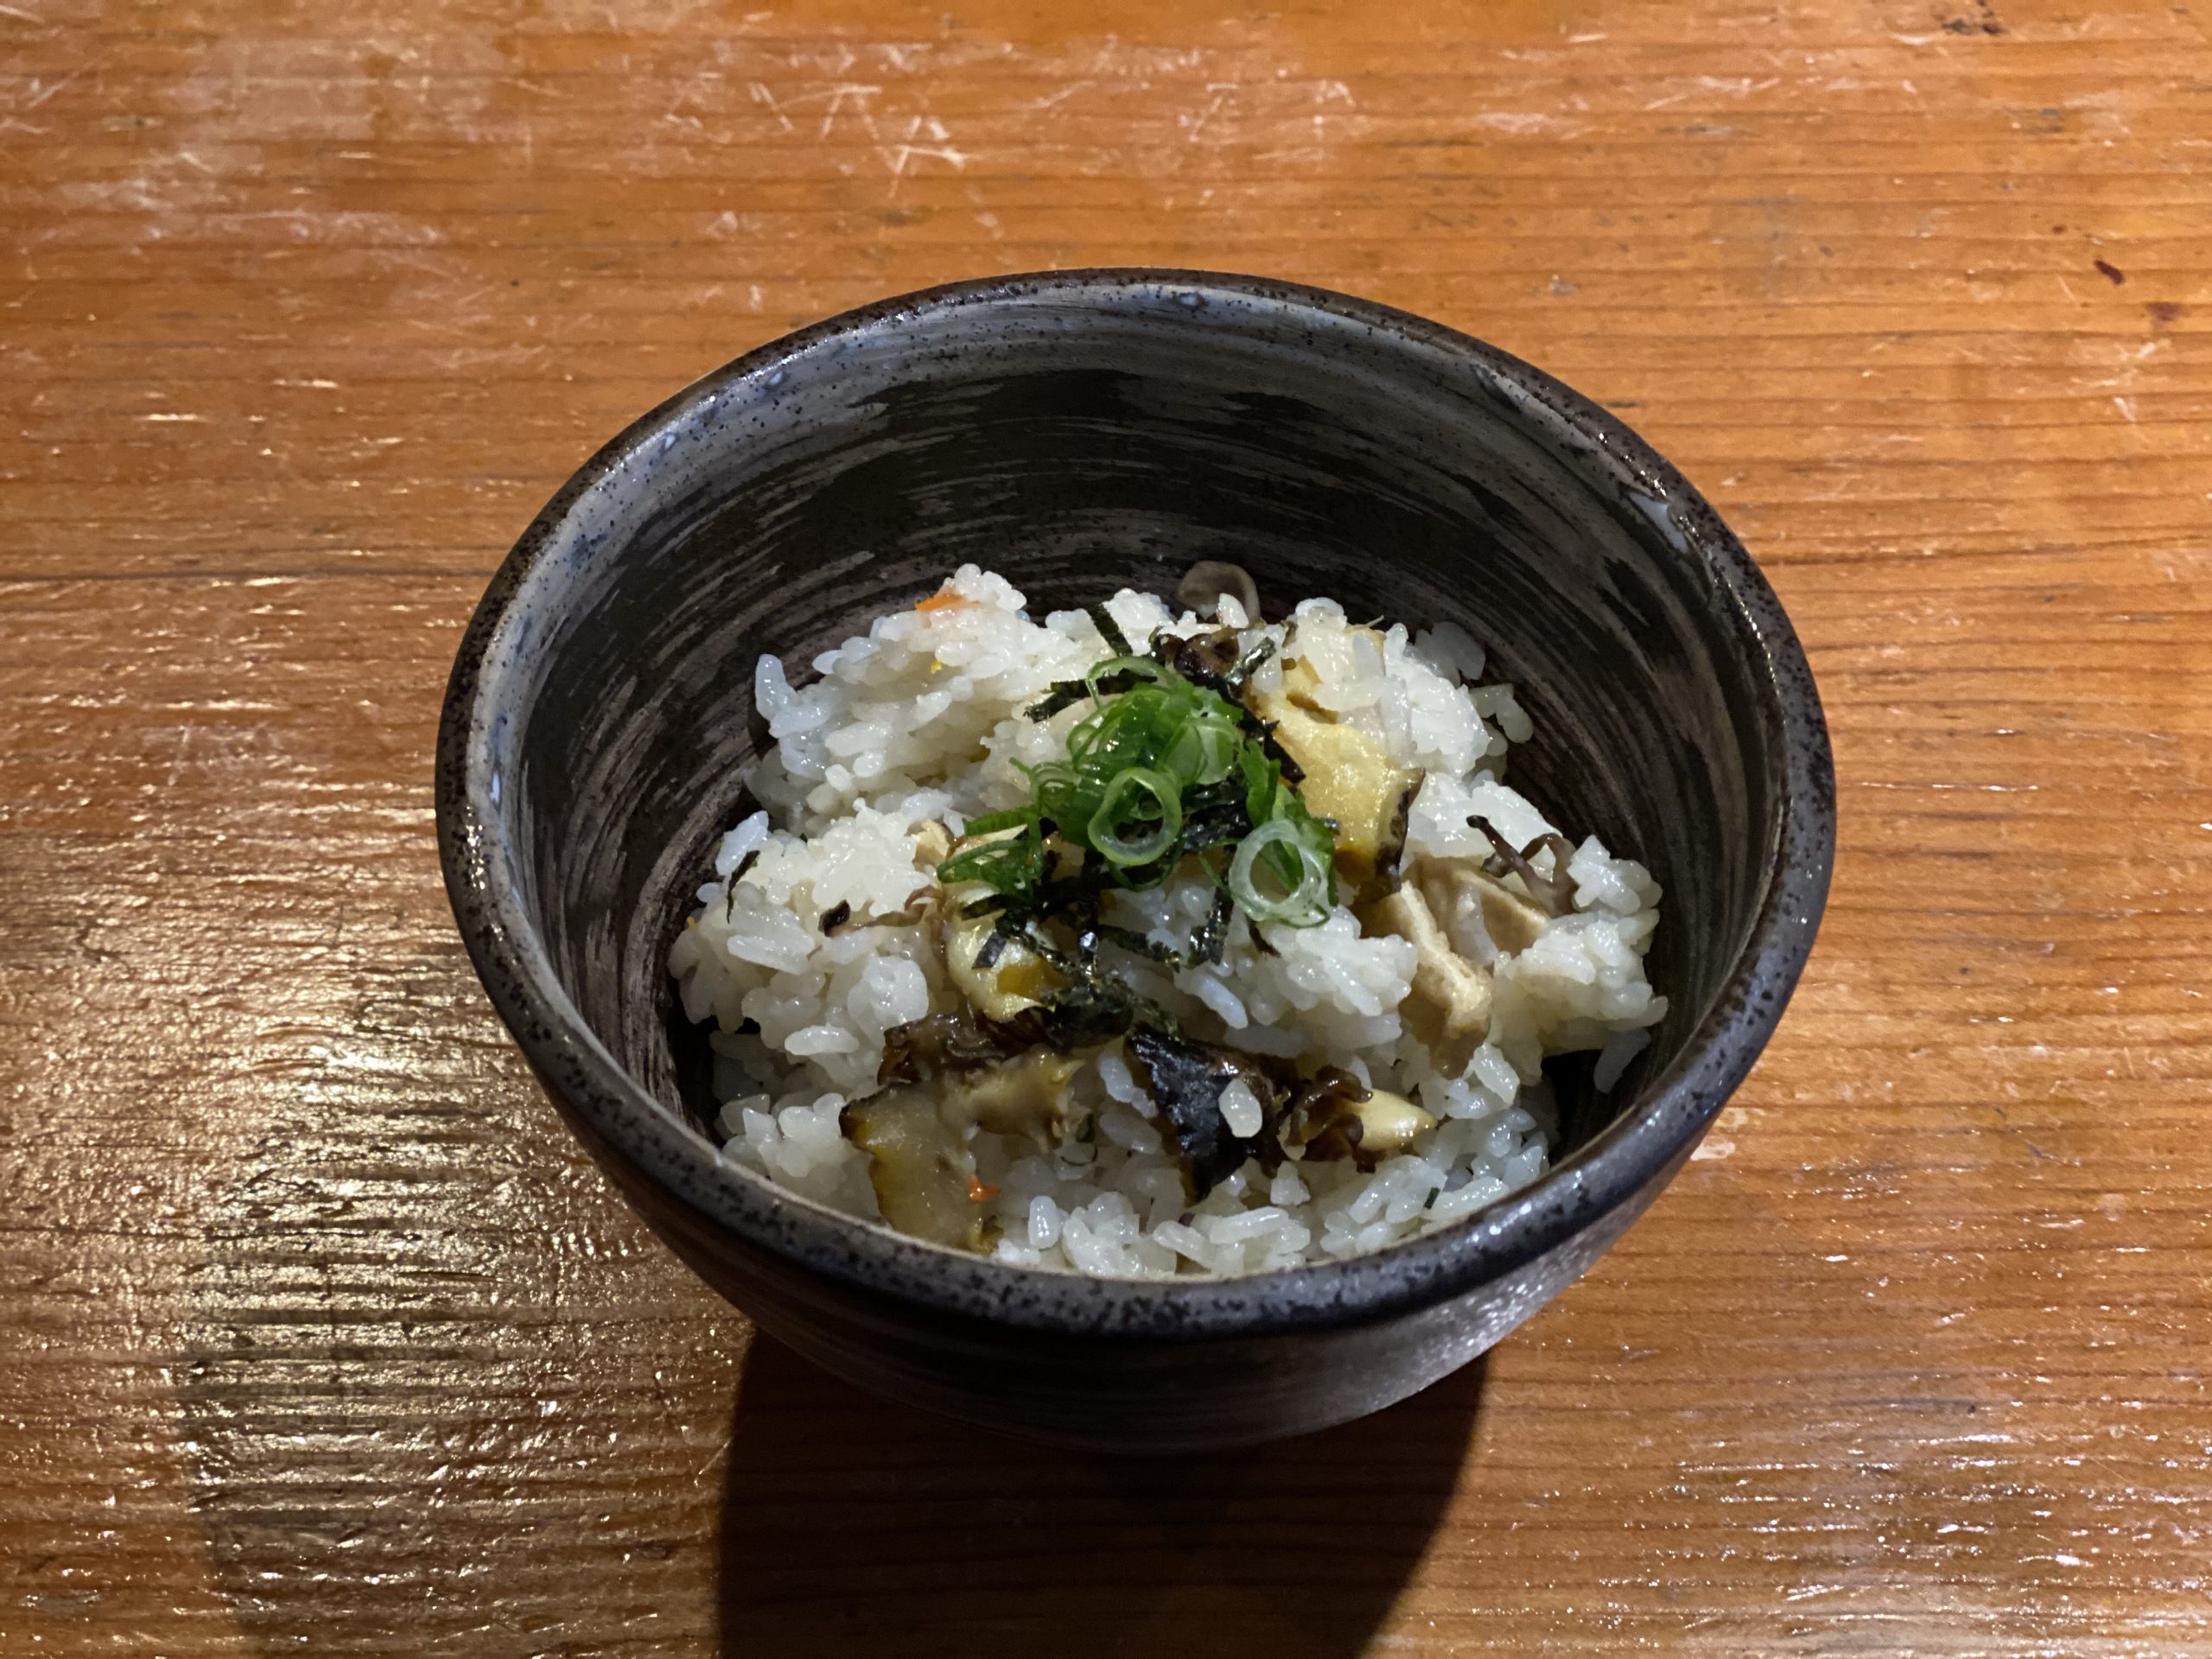 サザエの炊き込みご飯 海の恵み 食の底力 Japan 公式レシピサイト